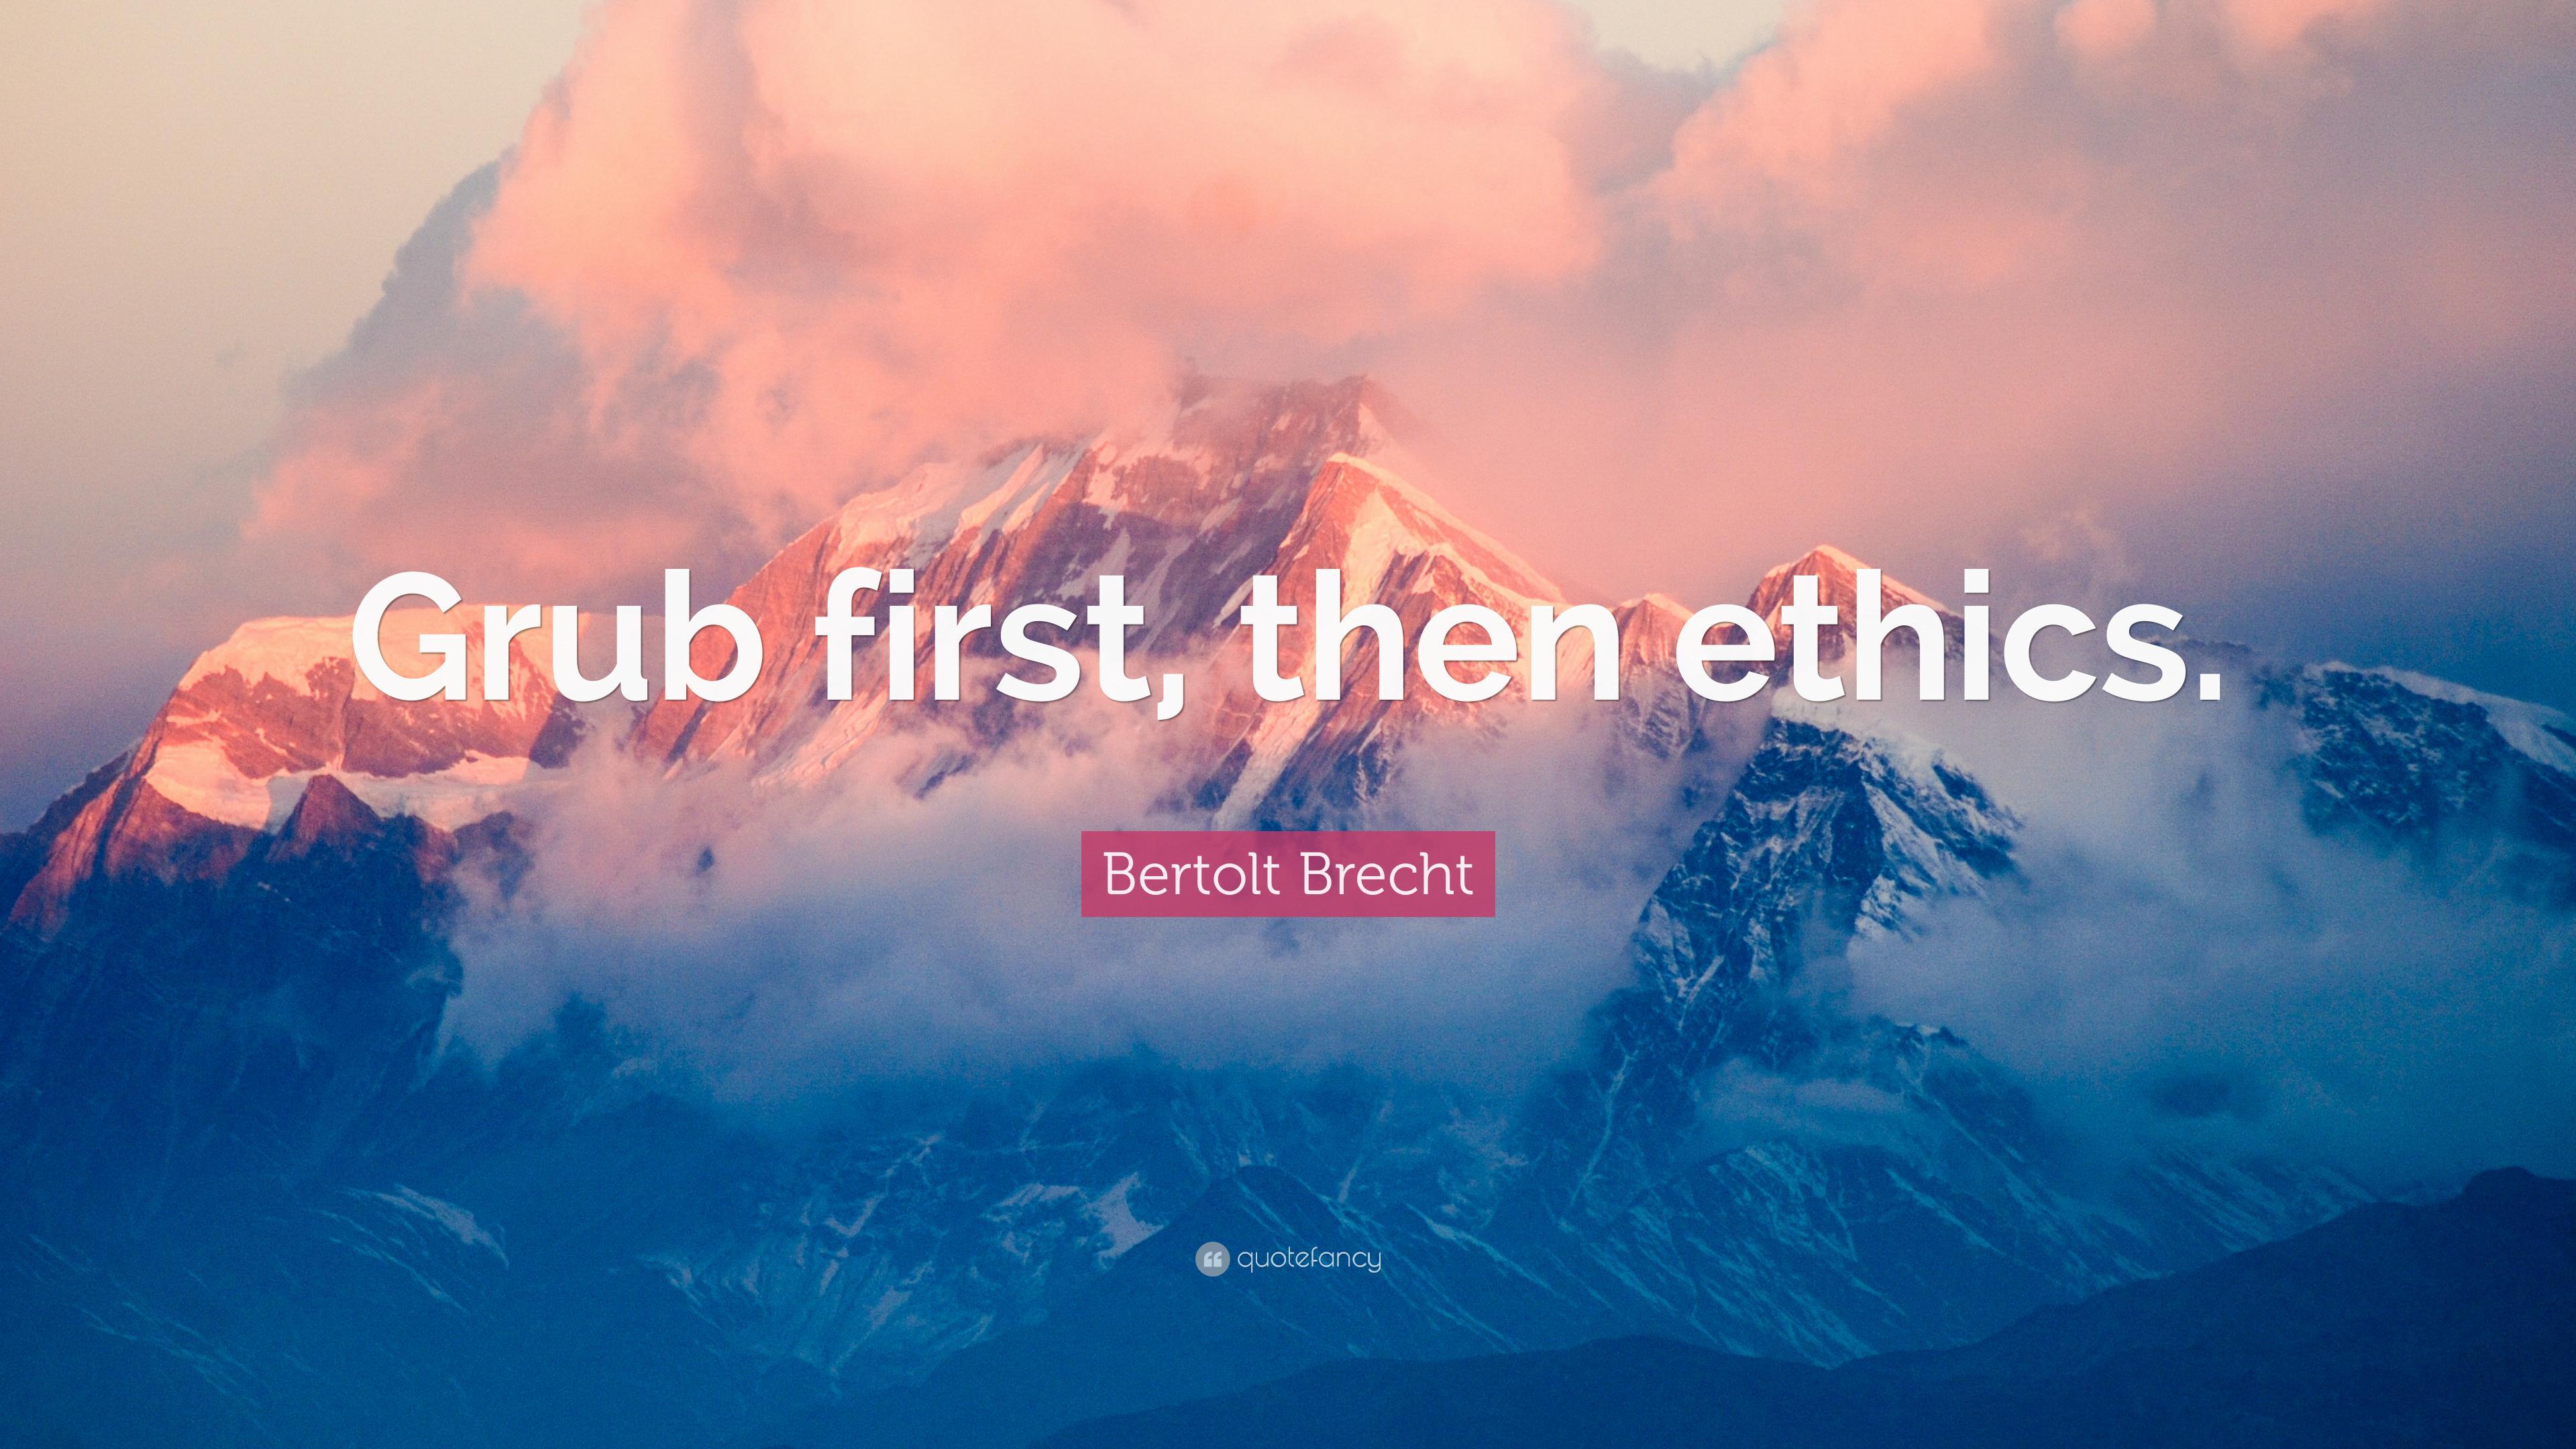 Bertolt Brecht Quote: “Grub first, then ethics.” 7 wallpaper